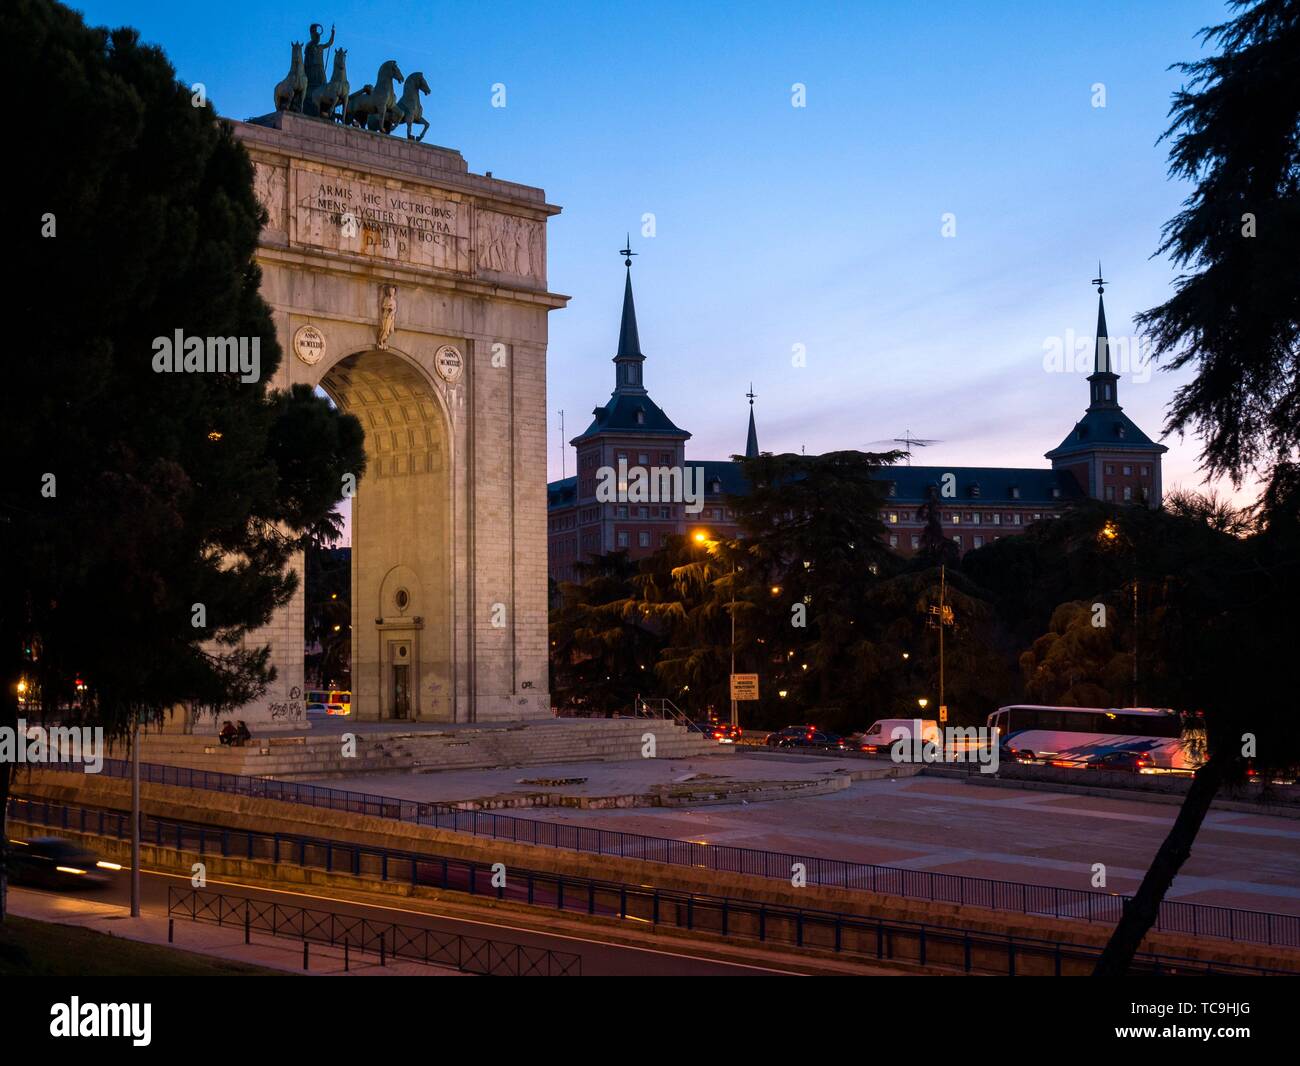 Arco de la Victoria con el Cuartel general del Ejército del Aire al fondo. Madrid. España. Stock Photo